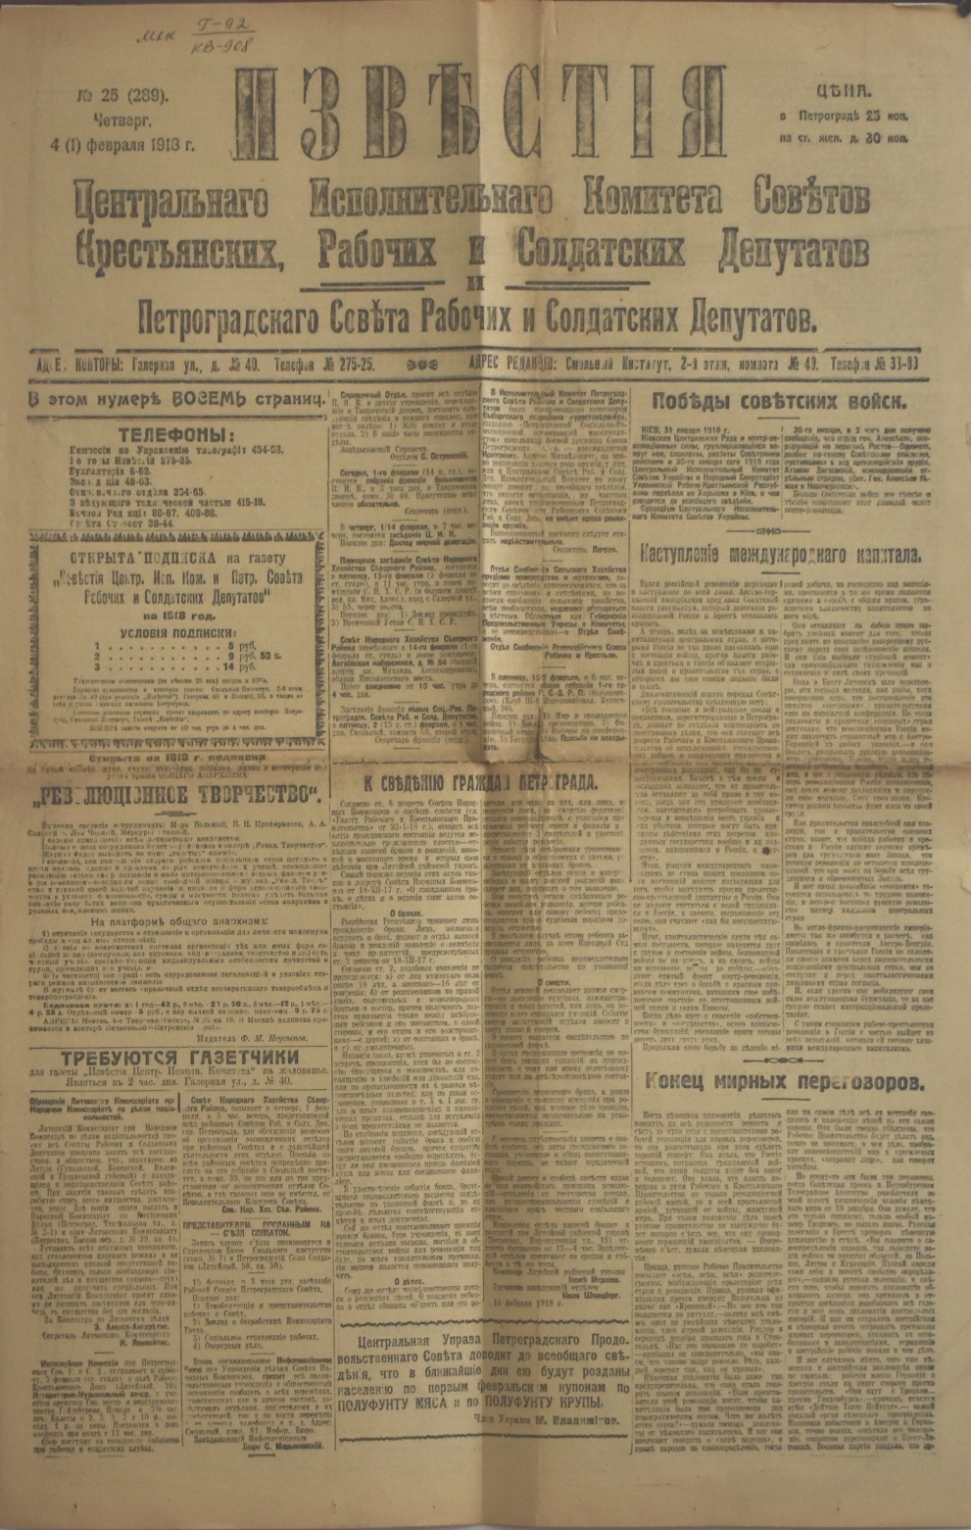 Газета "ИзвѢстія" № 25 (289), четвер 04 (01) лютого 1918 року